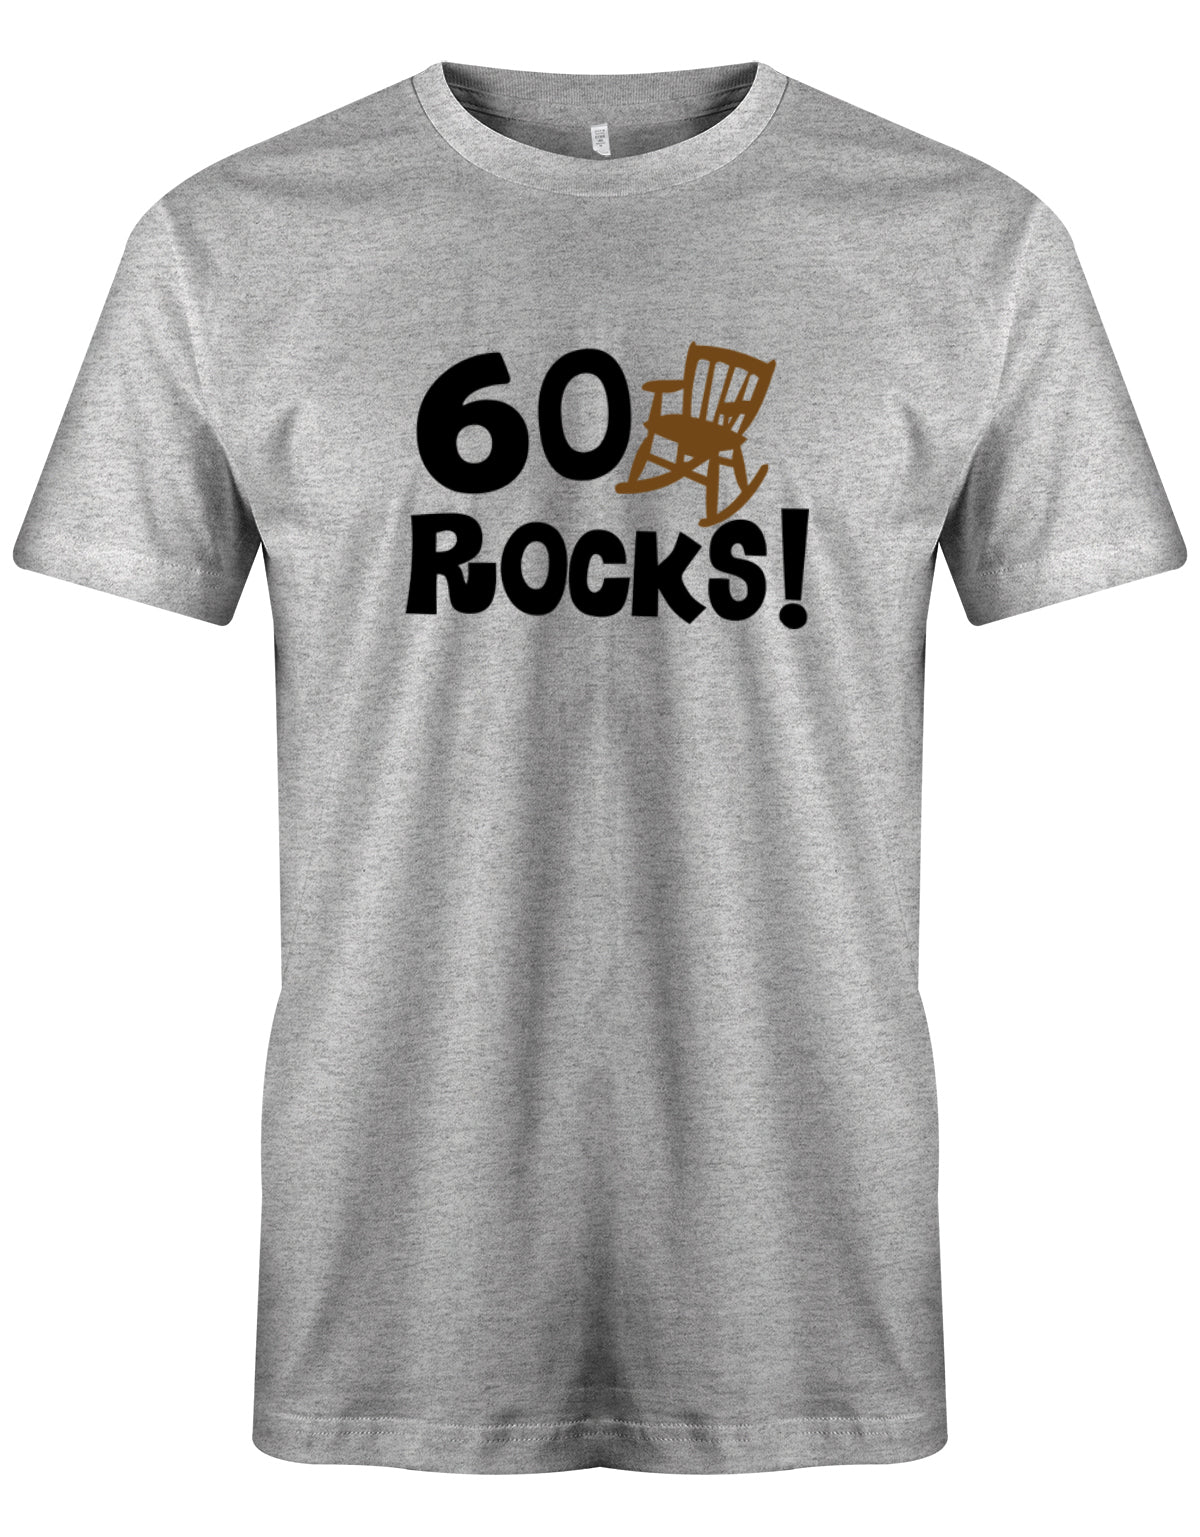 Lustiges T-Shirt zum 60. Geburtstag für den Mann Bedruckt mit 60 Rocks! Schaukelstuhl grau